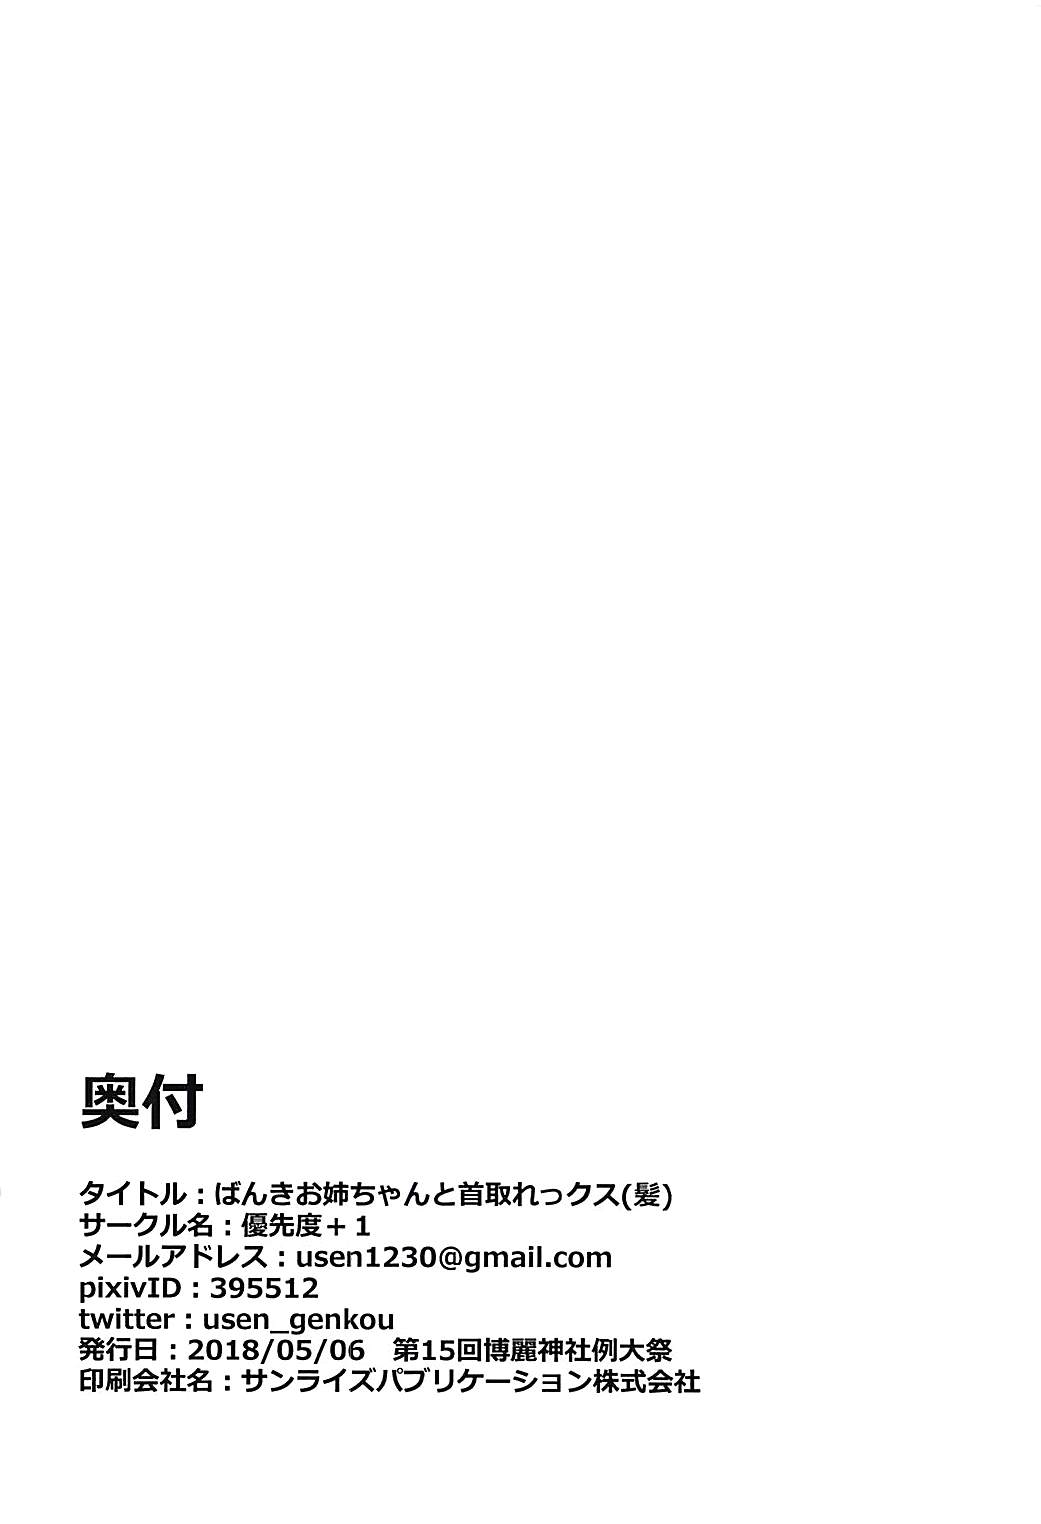 (例大祭15) [優先度+1 (ユウセン)] ばんきお姉ちゃんと首取れっクス(髪) (東方Project)